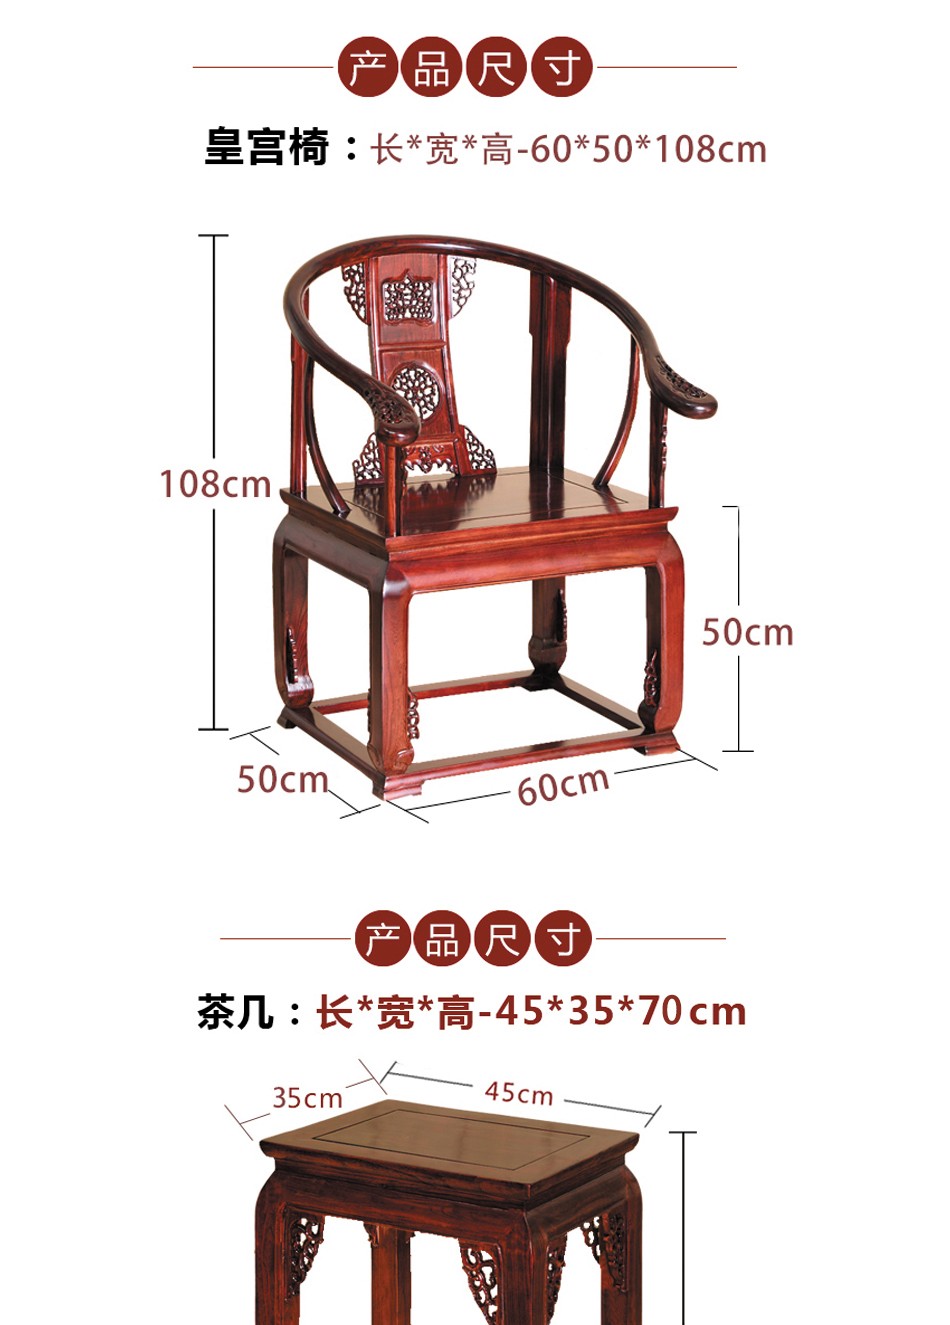 新中式皇宫椅实木三件套 jt65 椅子坐垫【图片 价格 品牌 报价】